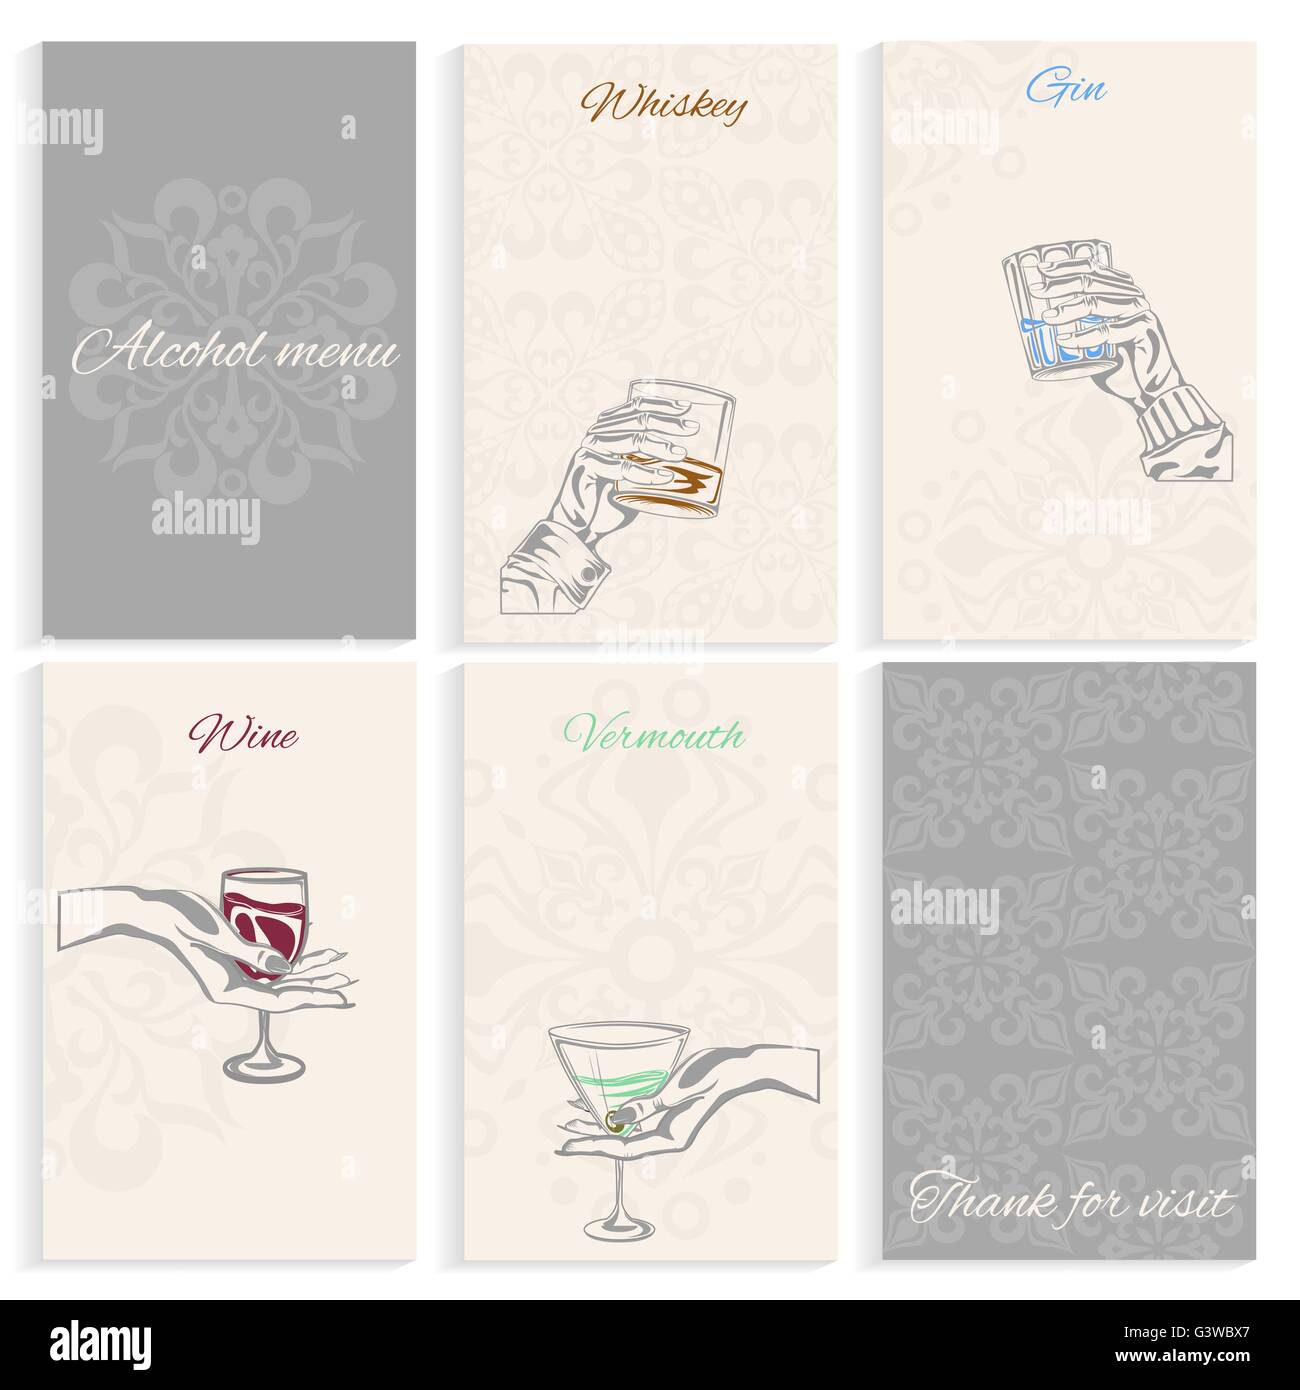 Définir les pages menu alcool hand holding glass Illustration de Vecteur